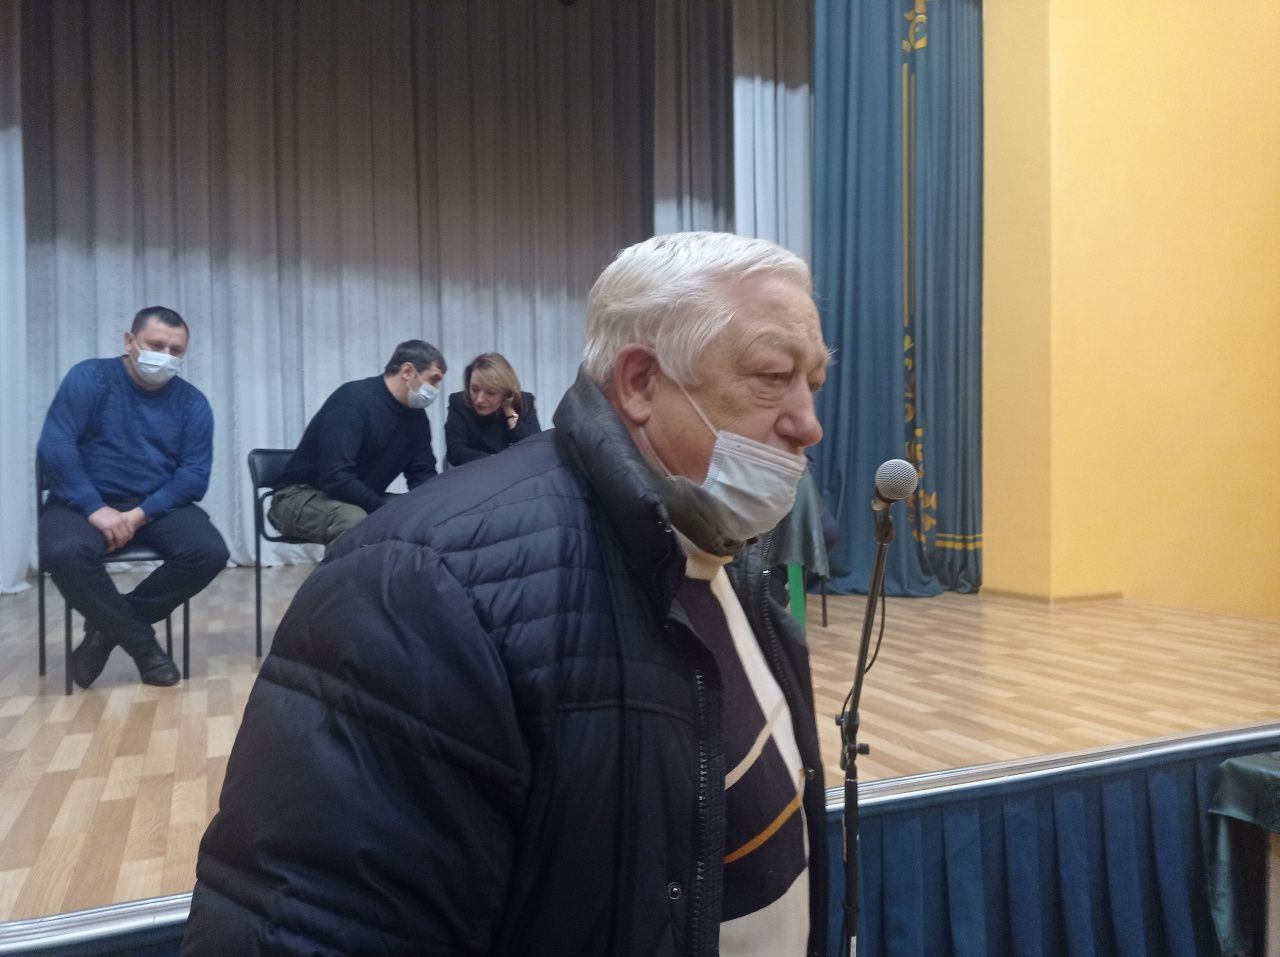 Черемуховский пенсионер: Горок нет, дети катаются на самодельных и попадают под транспорт. А обвиняют во всем мать!